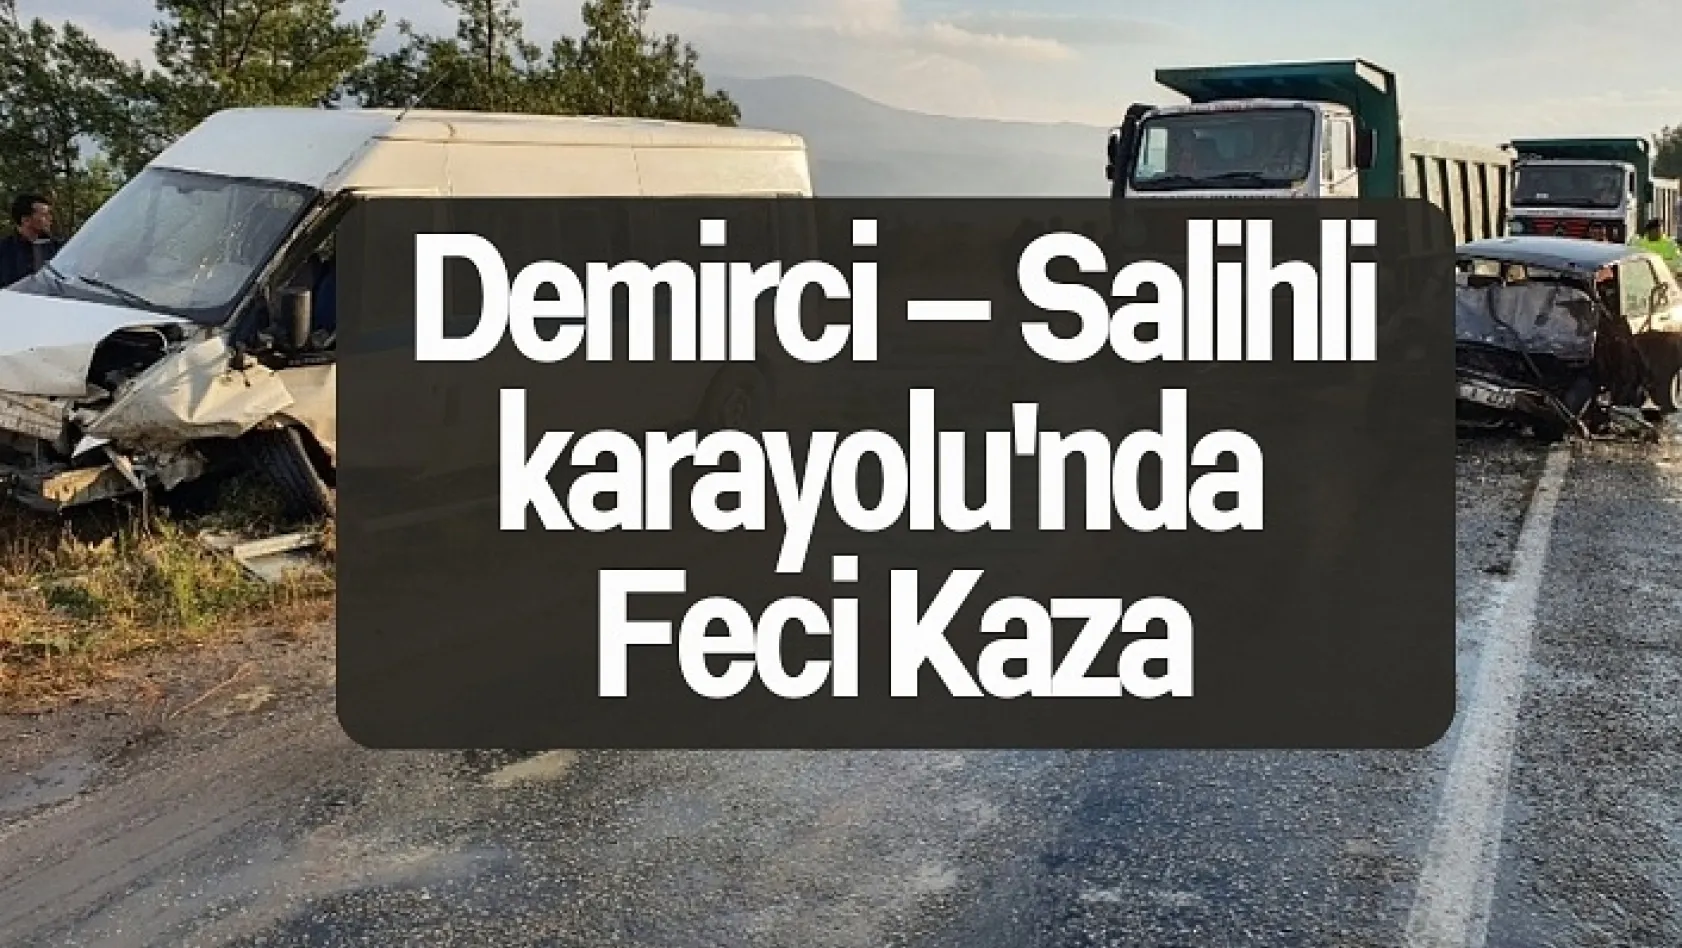 Demirci – Salihli karayolu'nda Feci Kaza: 7 Yaralı